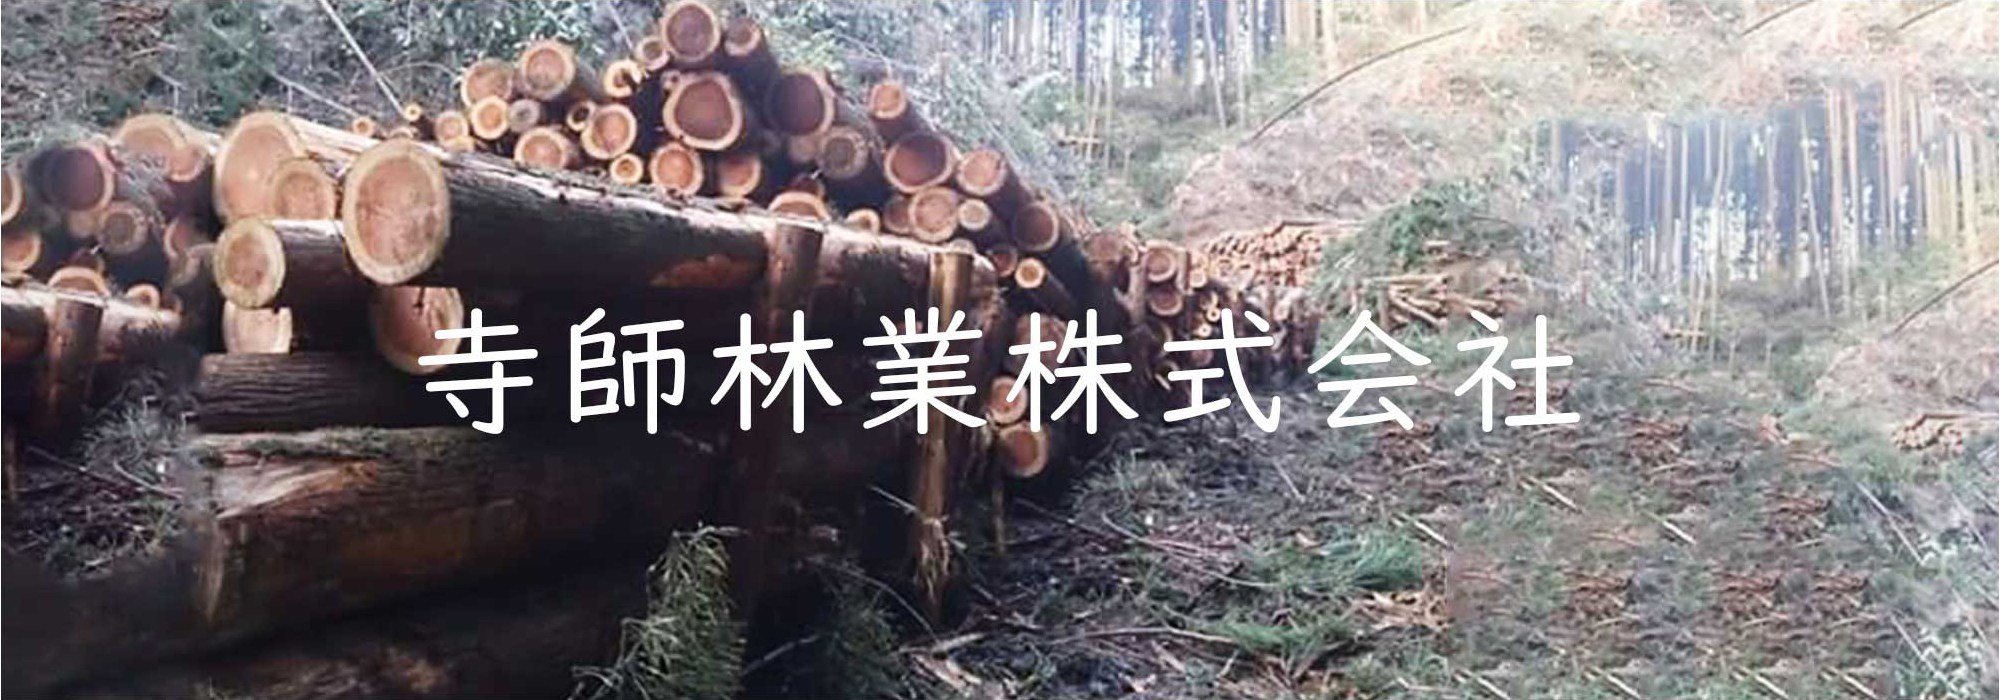 寺師林業株式会社